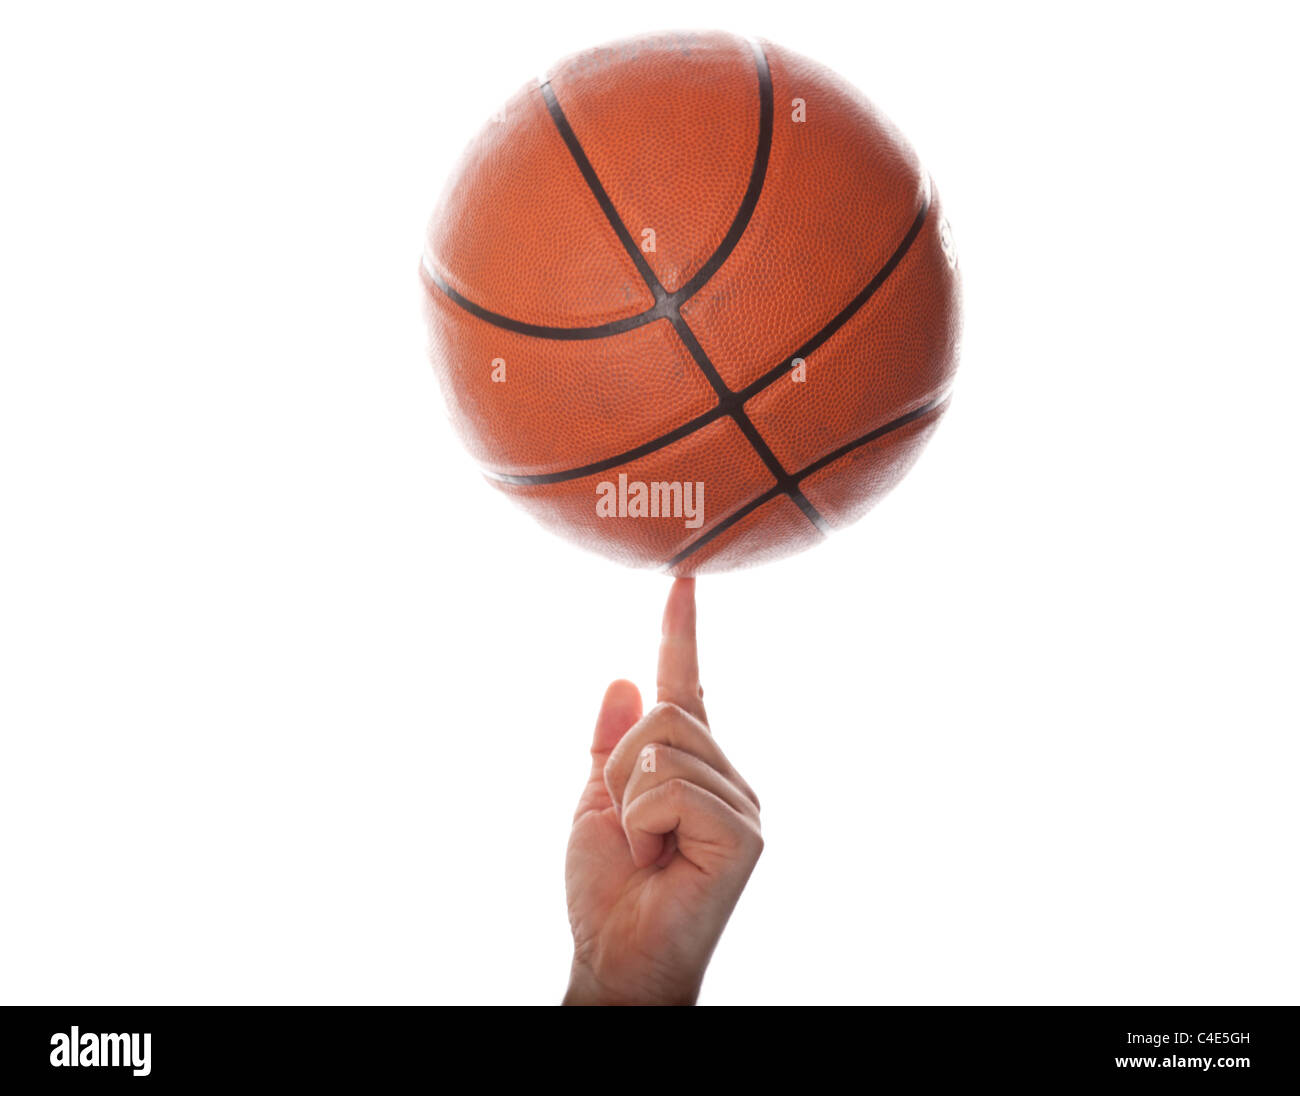 Immagine di palla da basket vettoriale immagini e fotografie stock